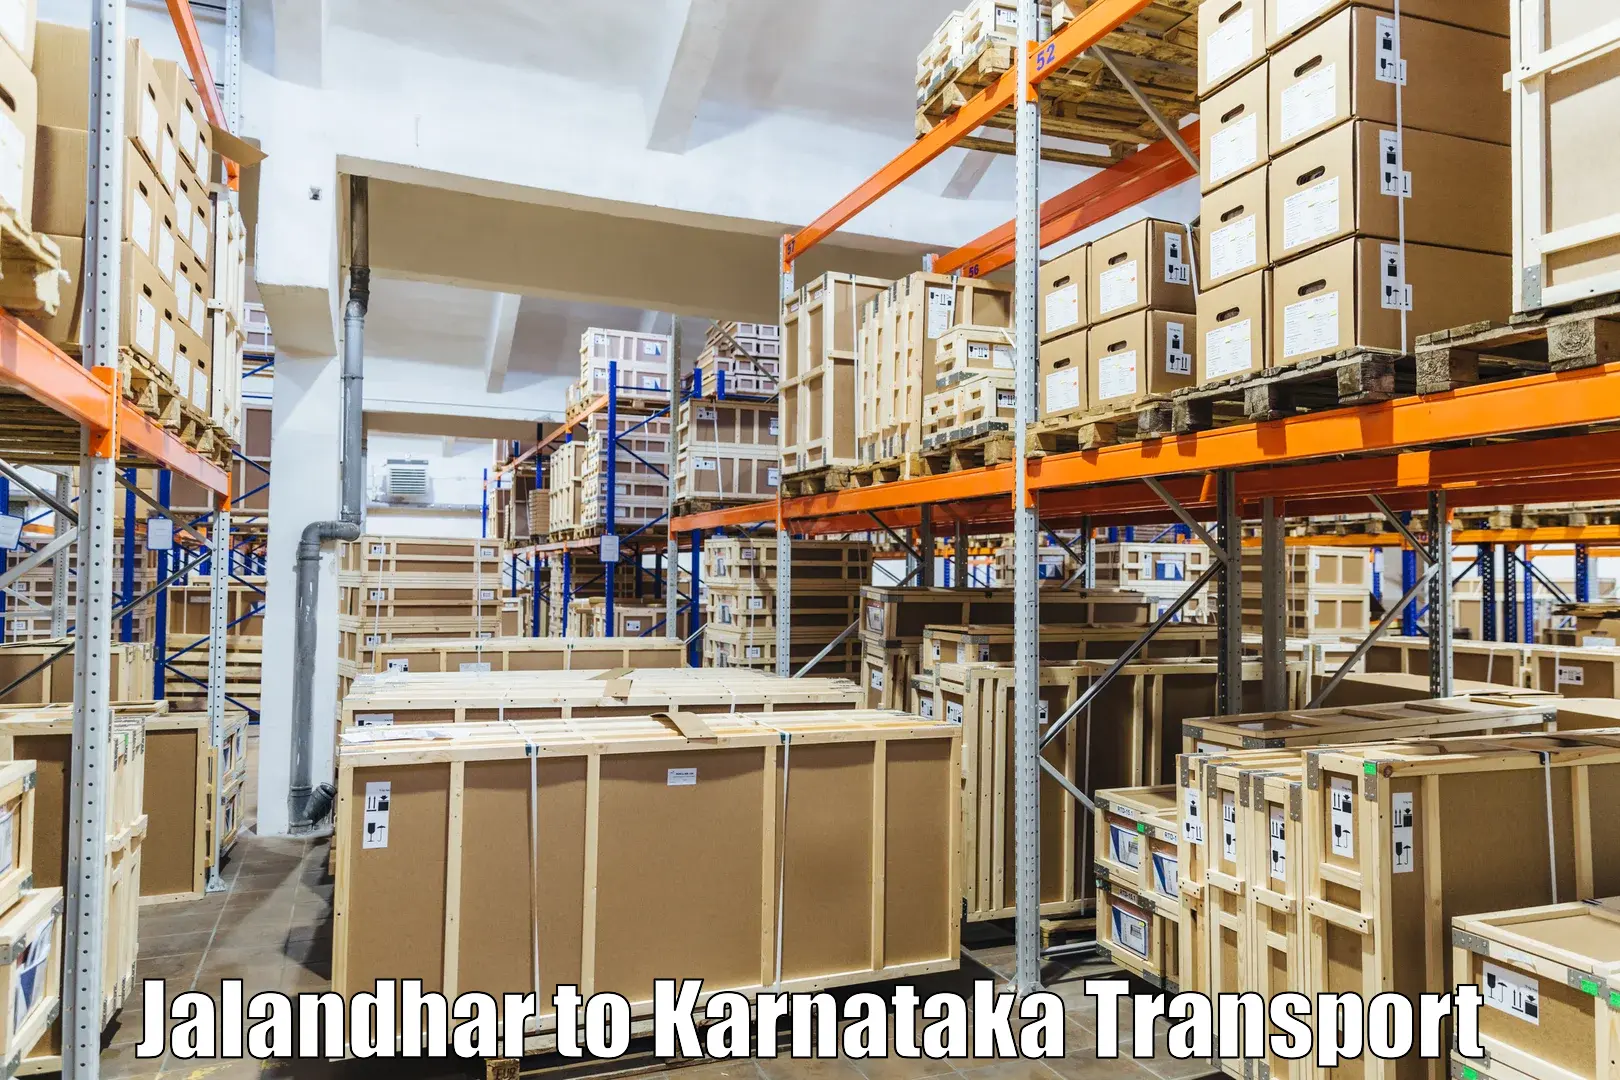 Online transport booking Jalandhar to Kalasa